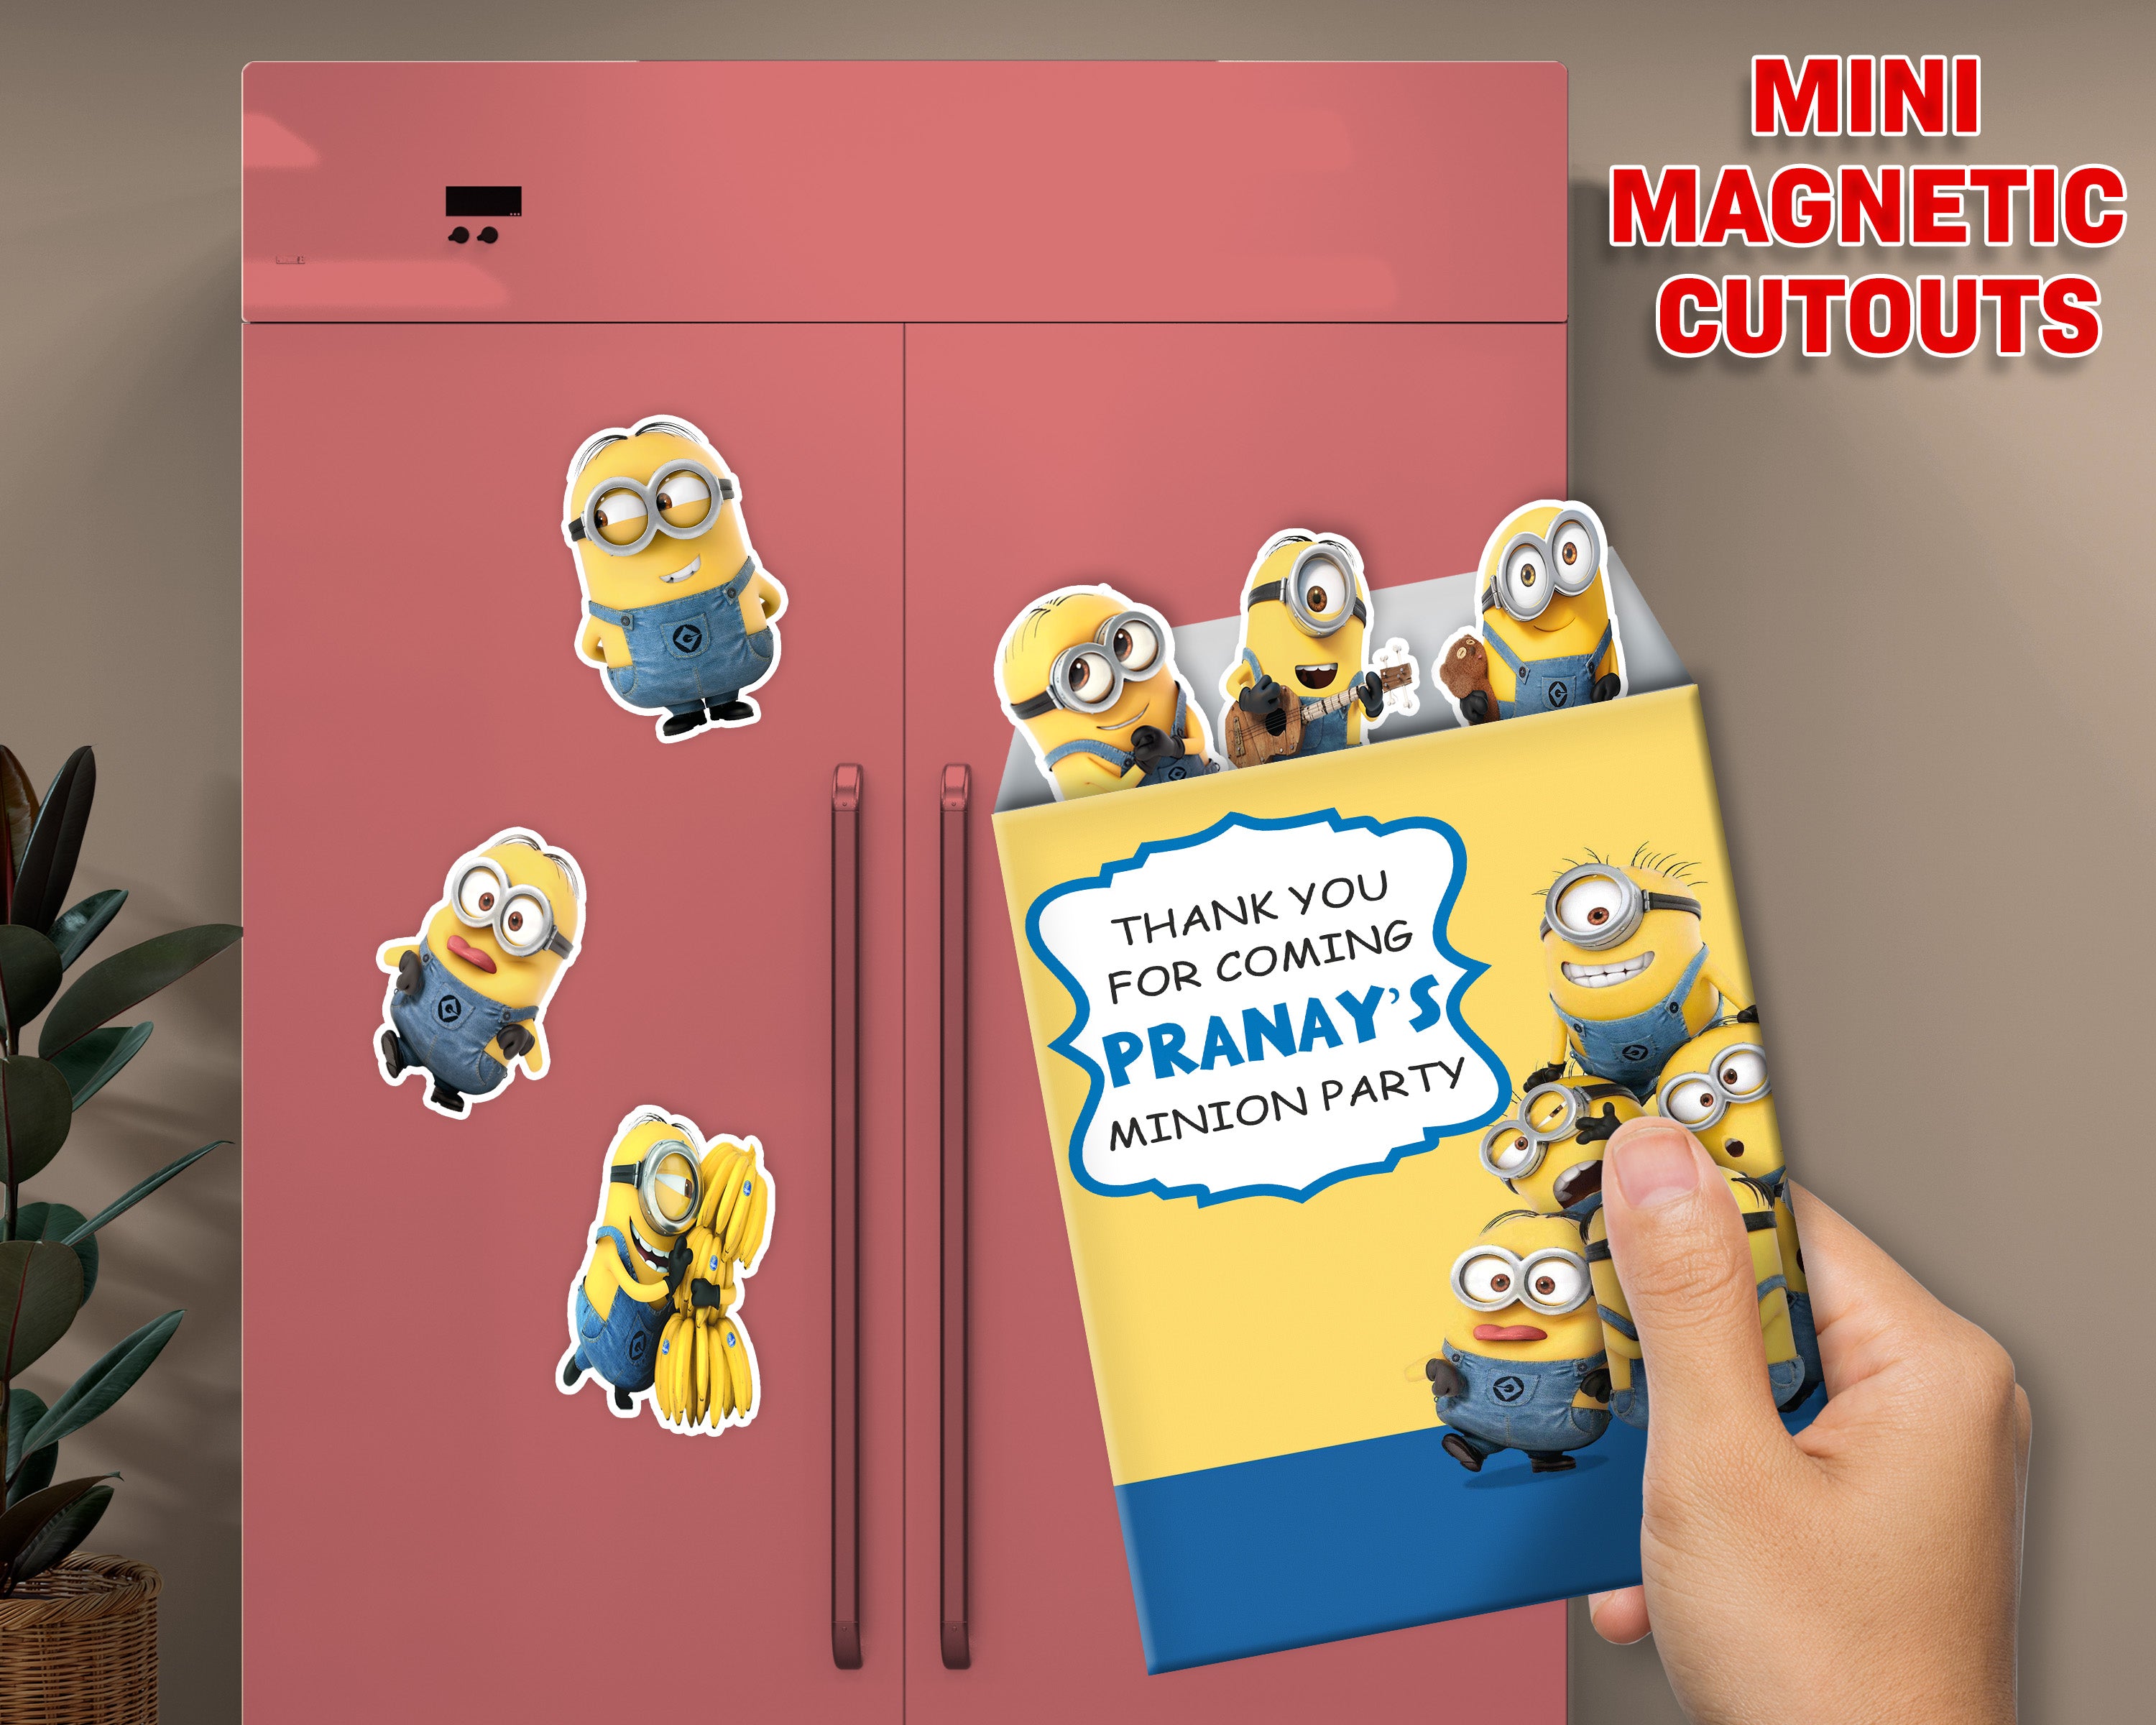 PSI Minion Theme Mini Magnetic Return Gift Pack